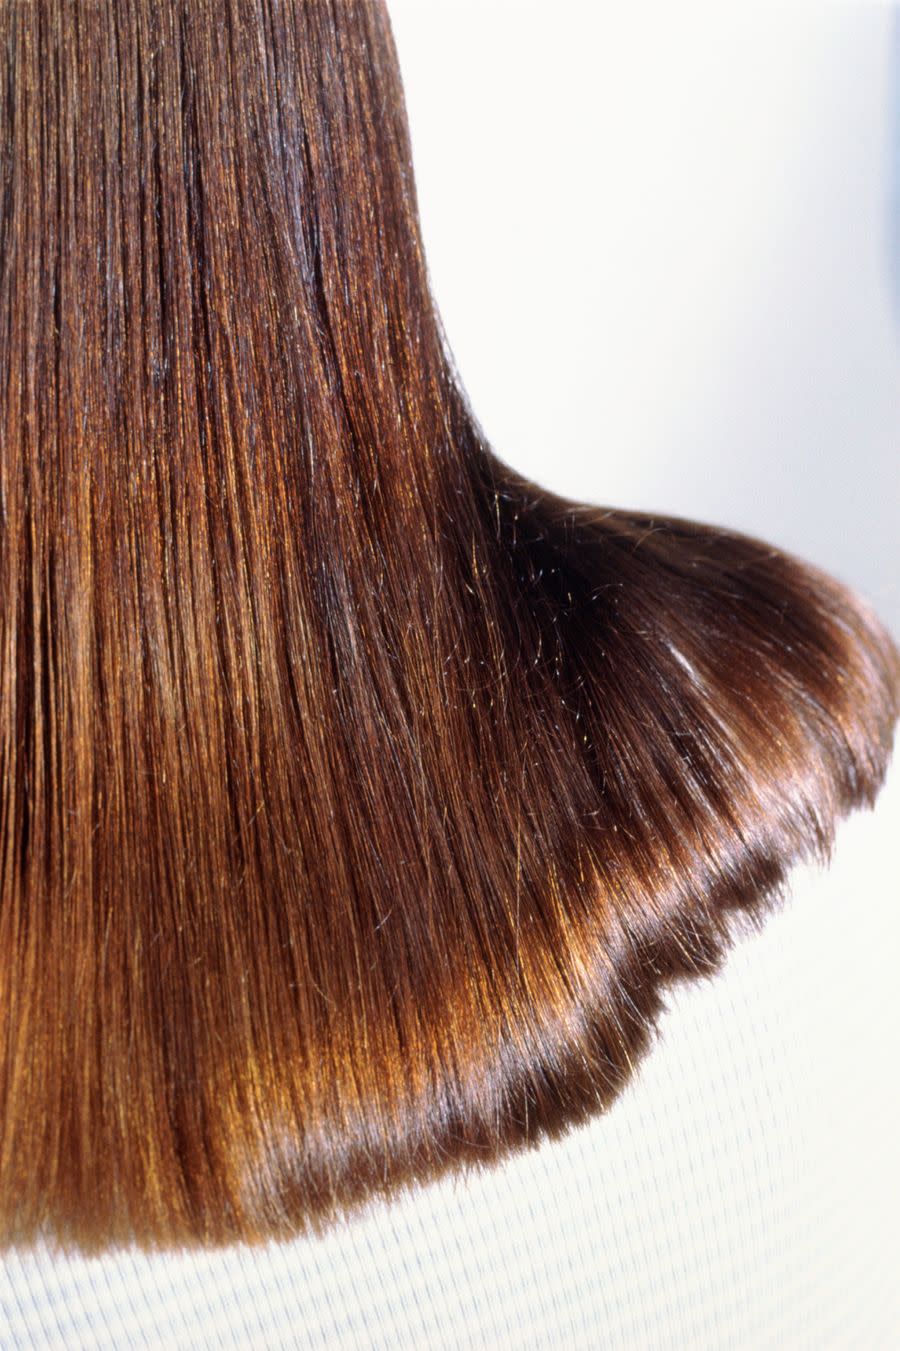 椰子油美容功效, 減少頭髮毛躁